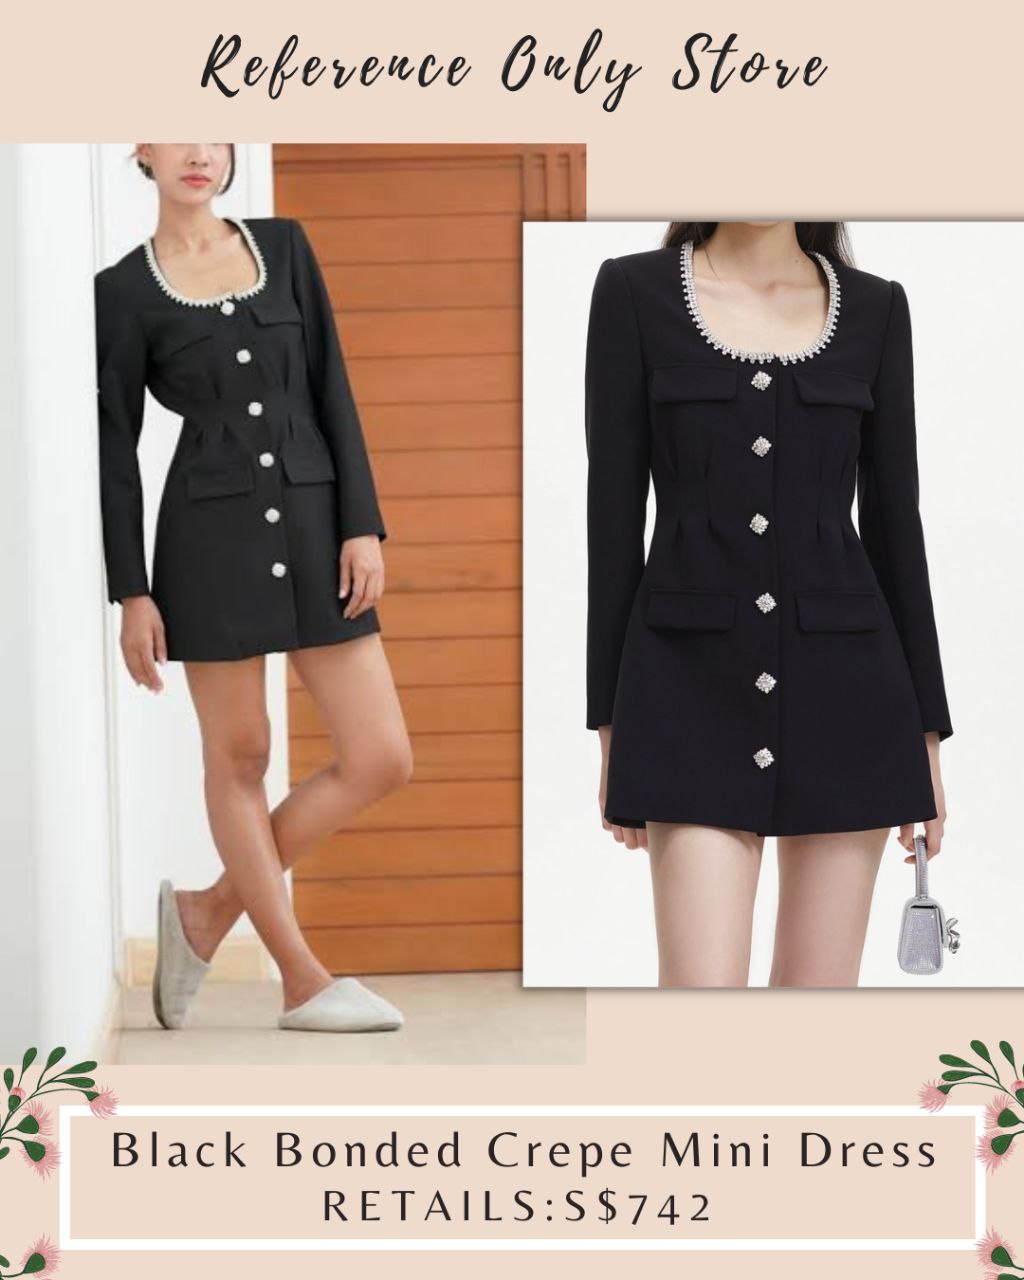 SP Black Bonded Crepe Mini Dress